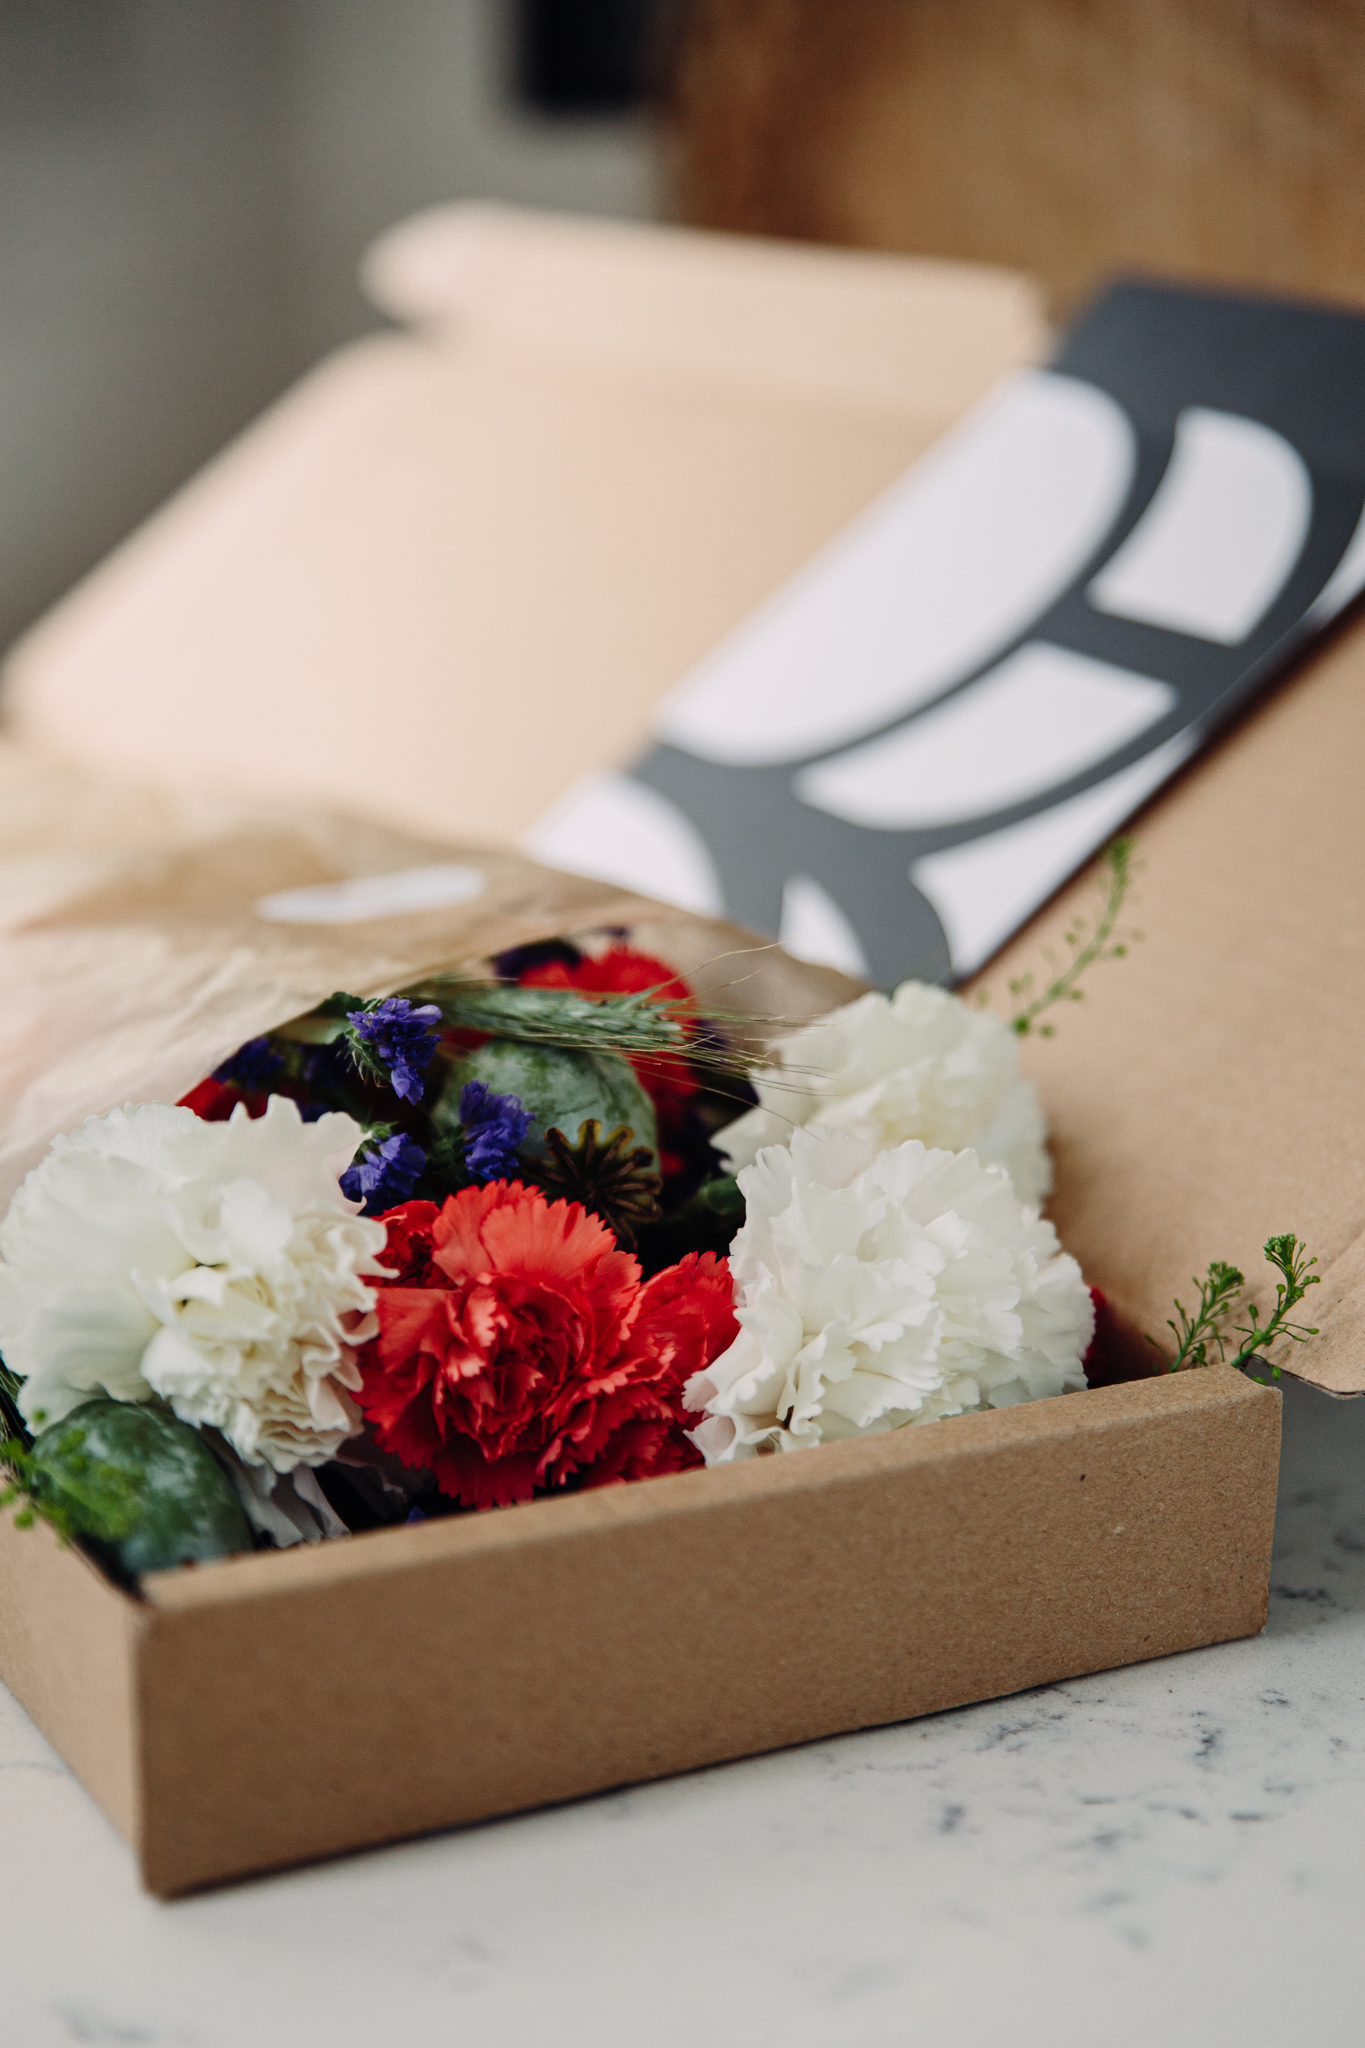 Letterbox flowers - Blombruket bukett i låda